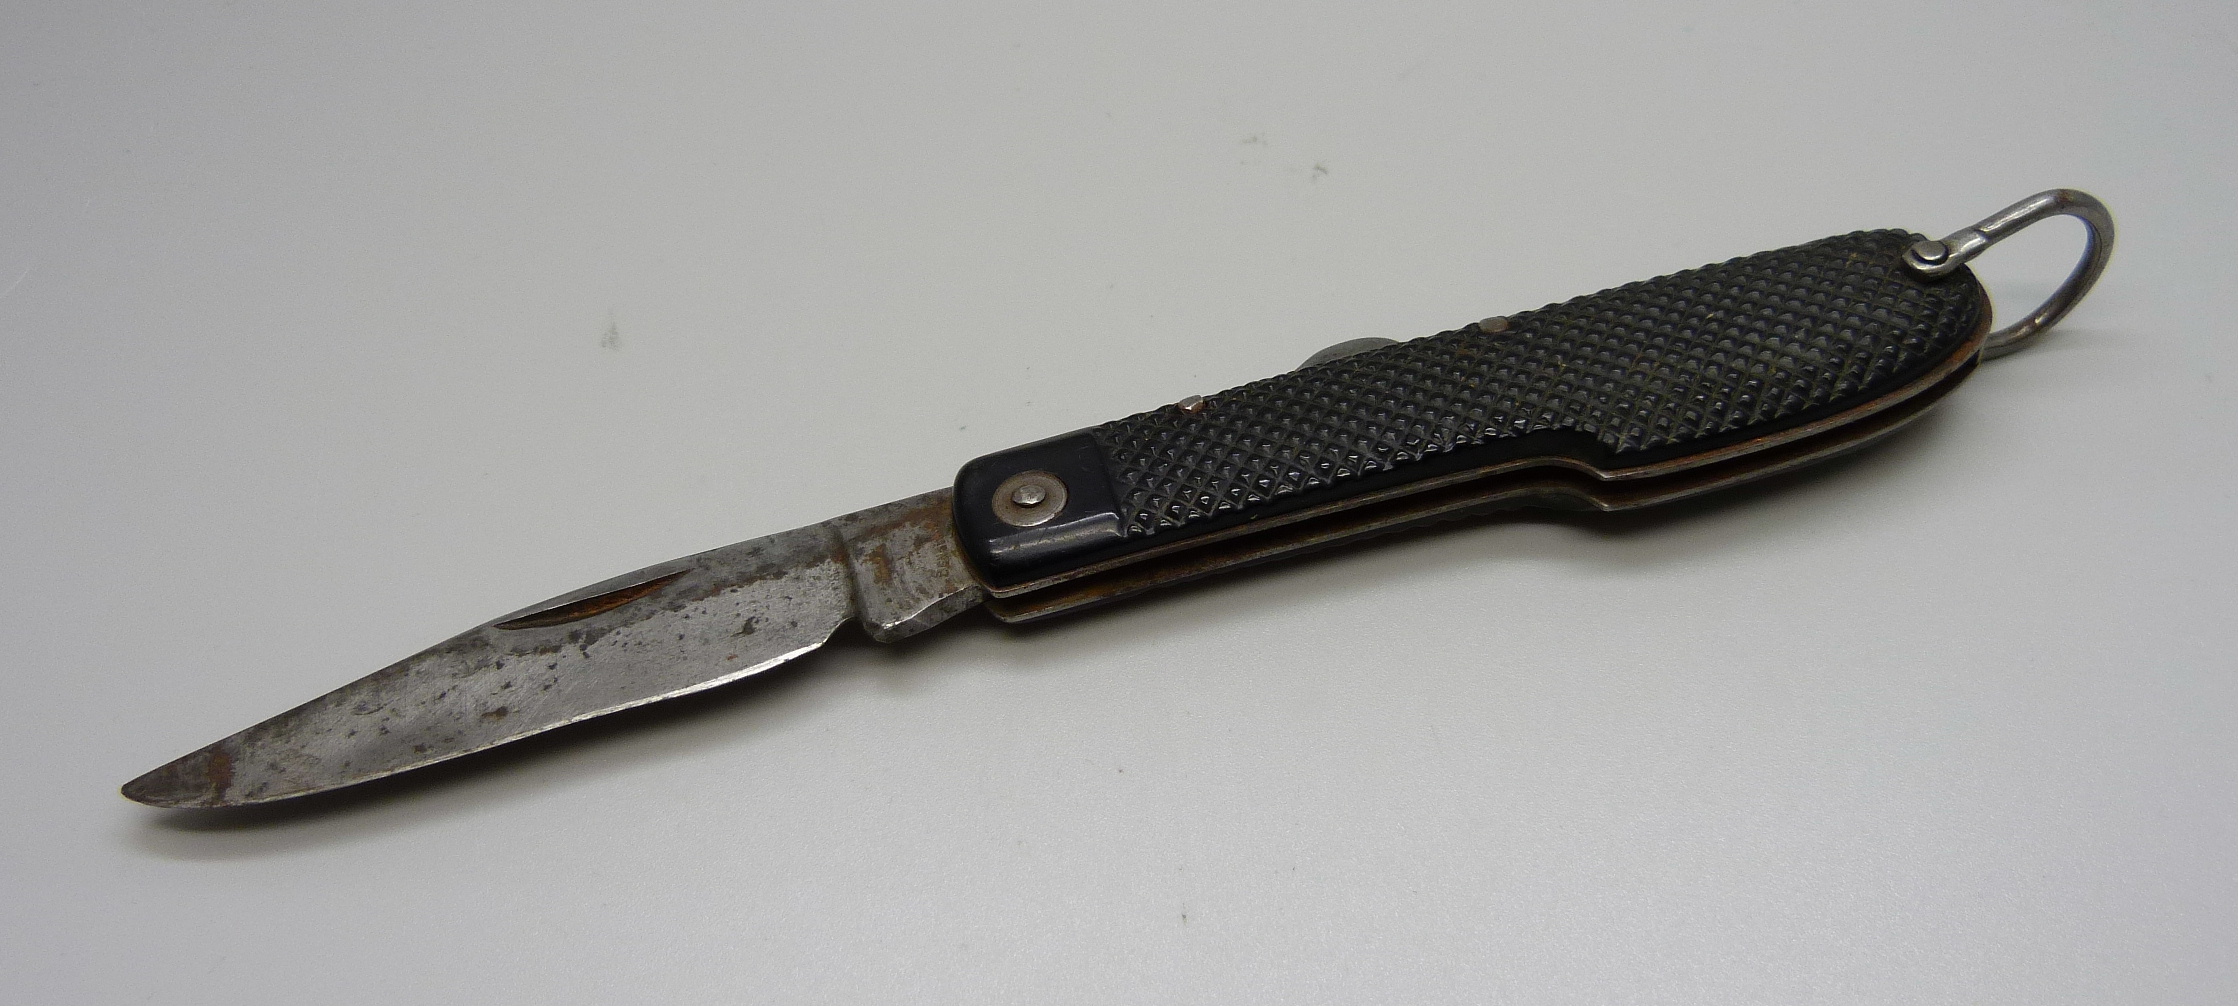 A folding pocket knife